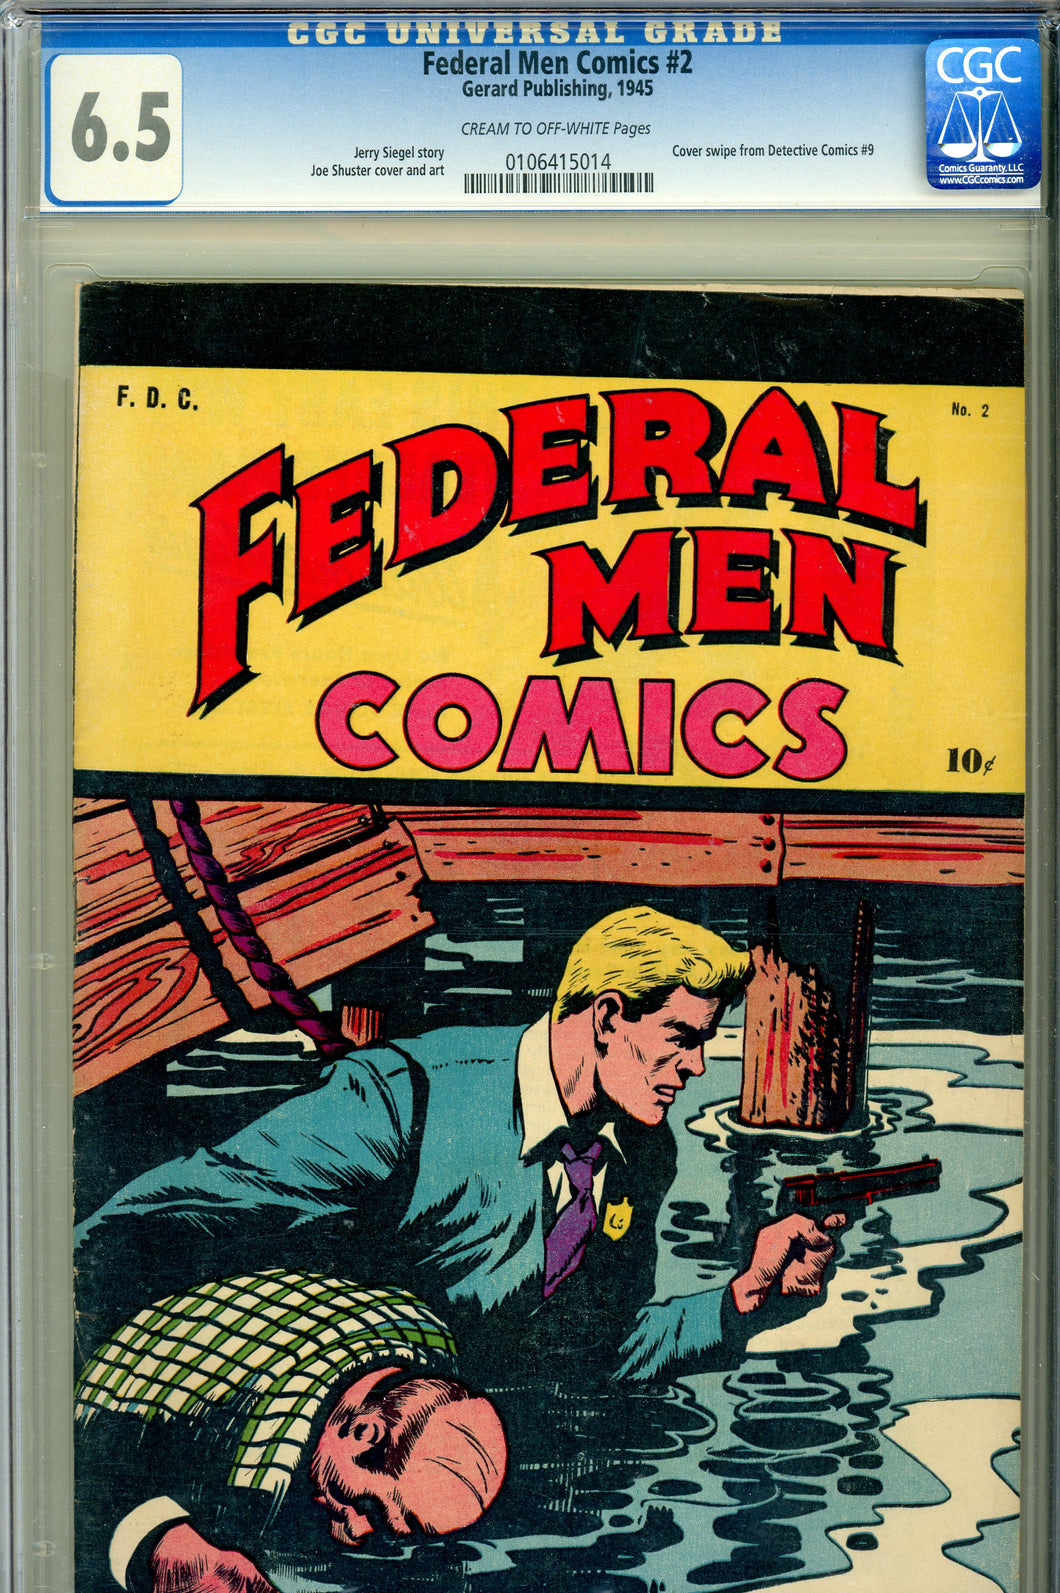 Federal Men Comics #2 CGC 6.5